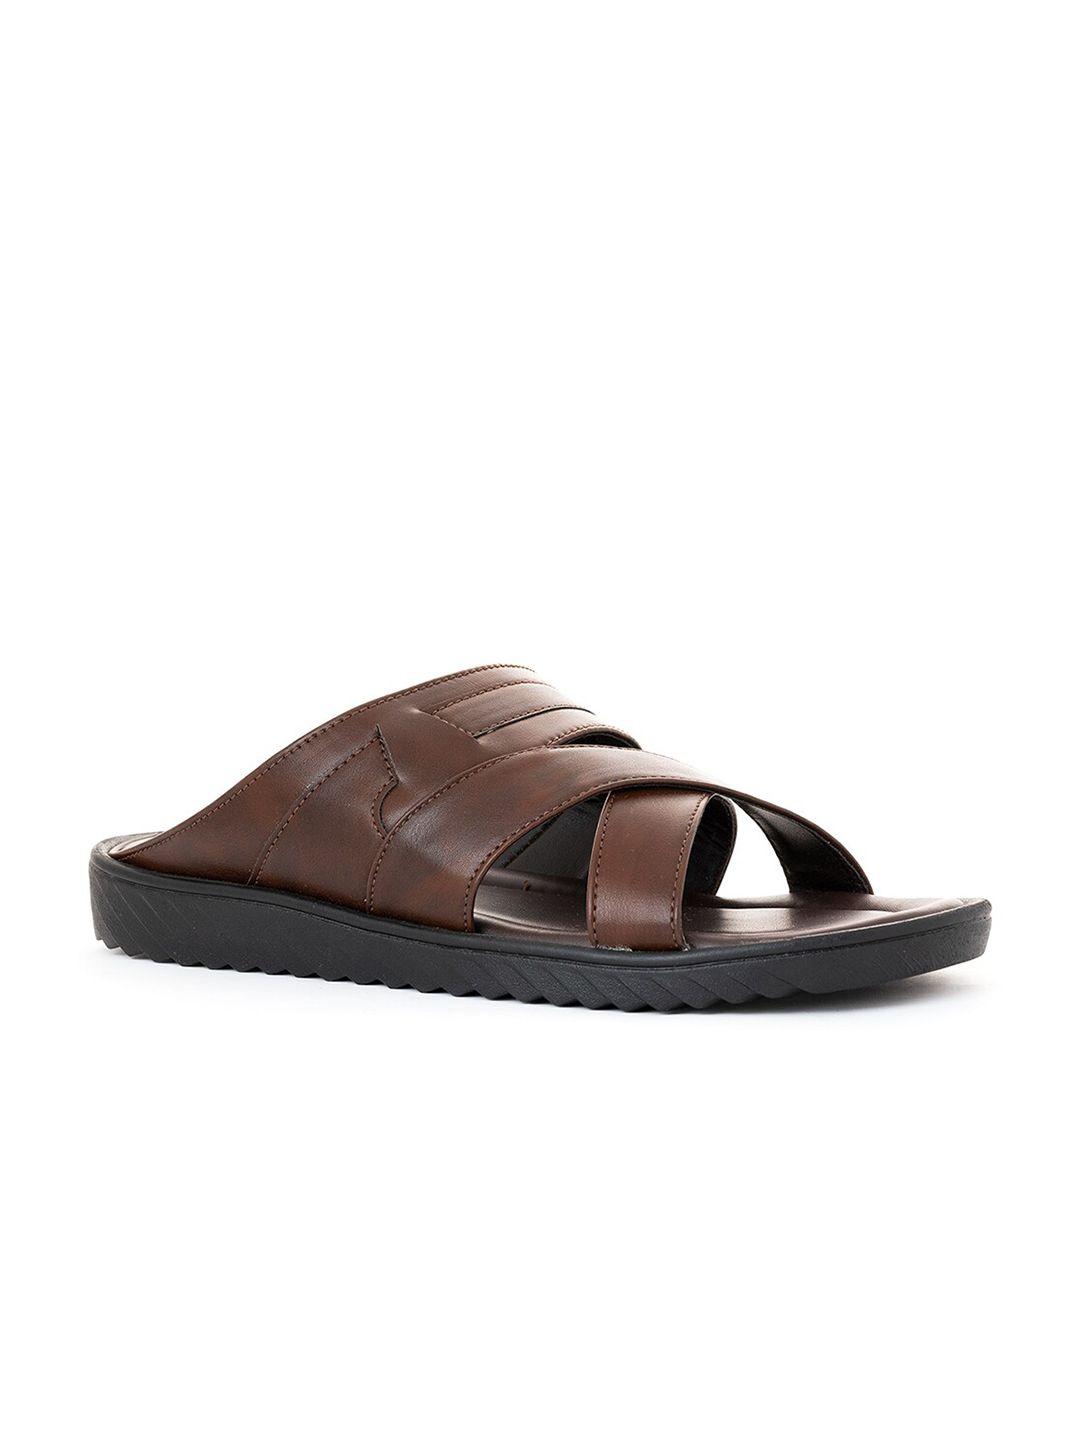 khadims men brown & black comfort sandals